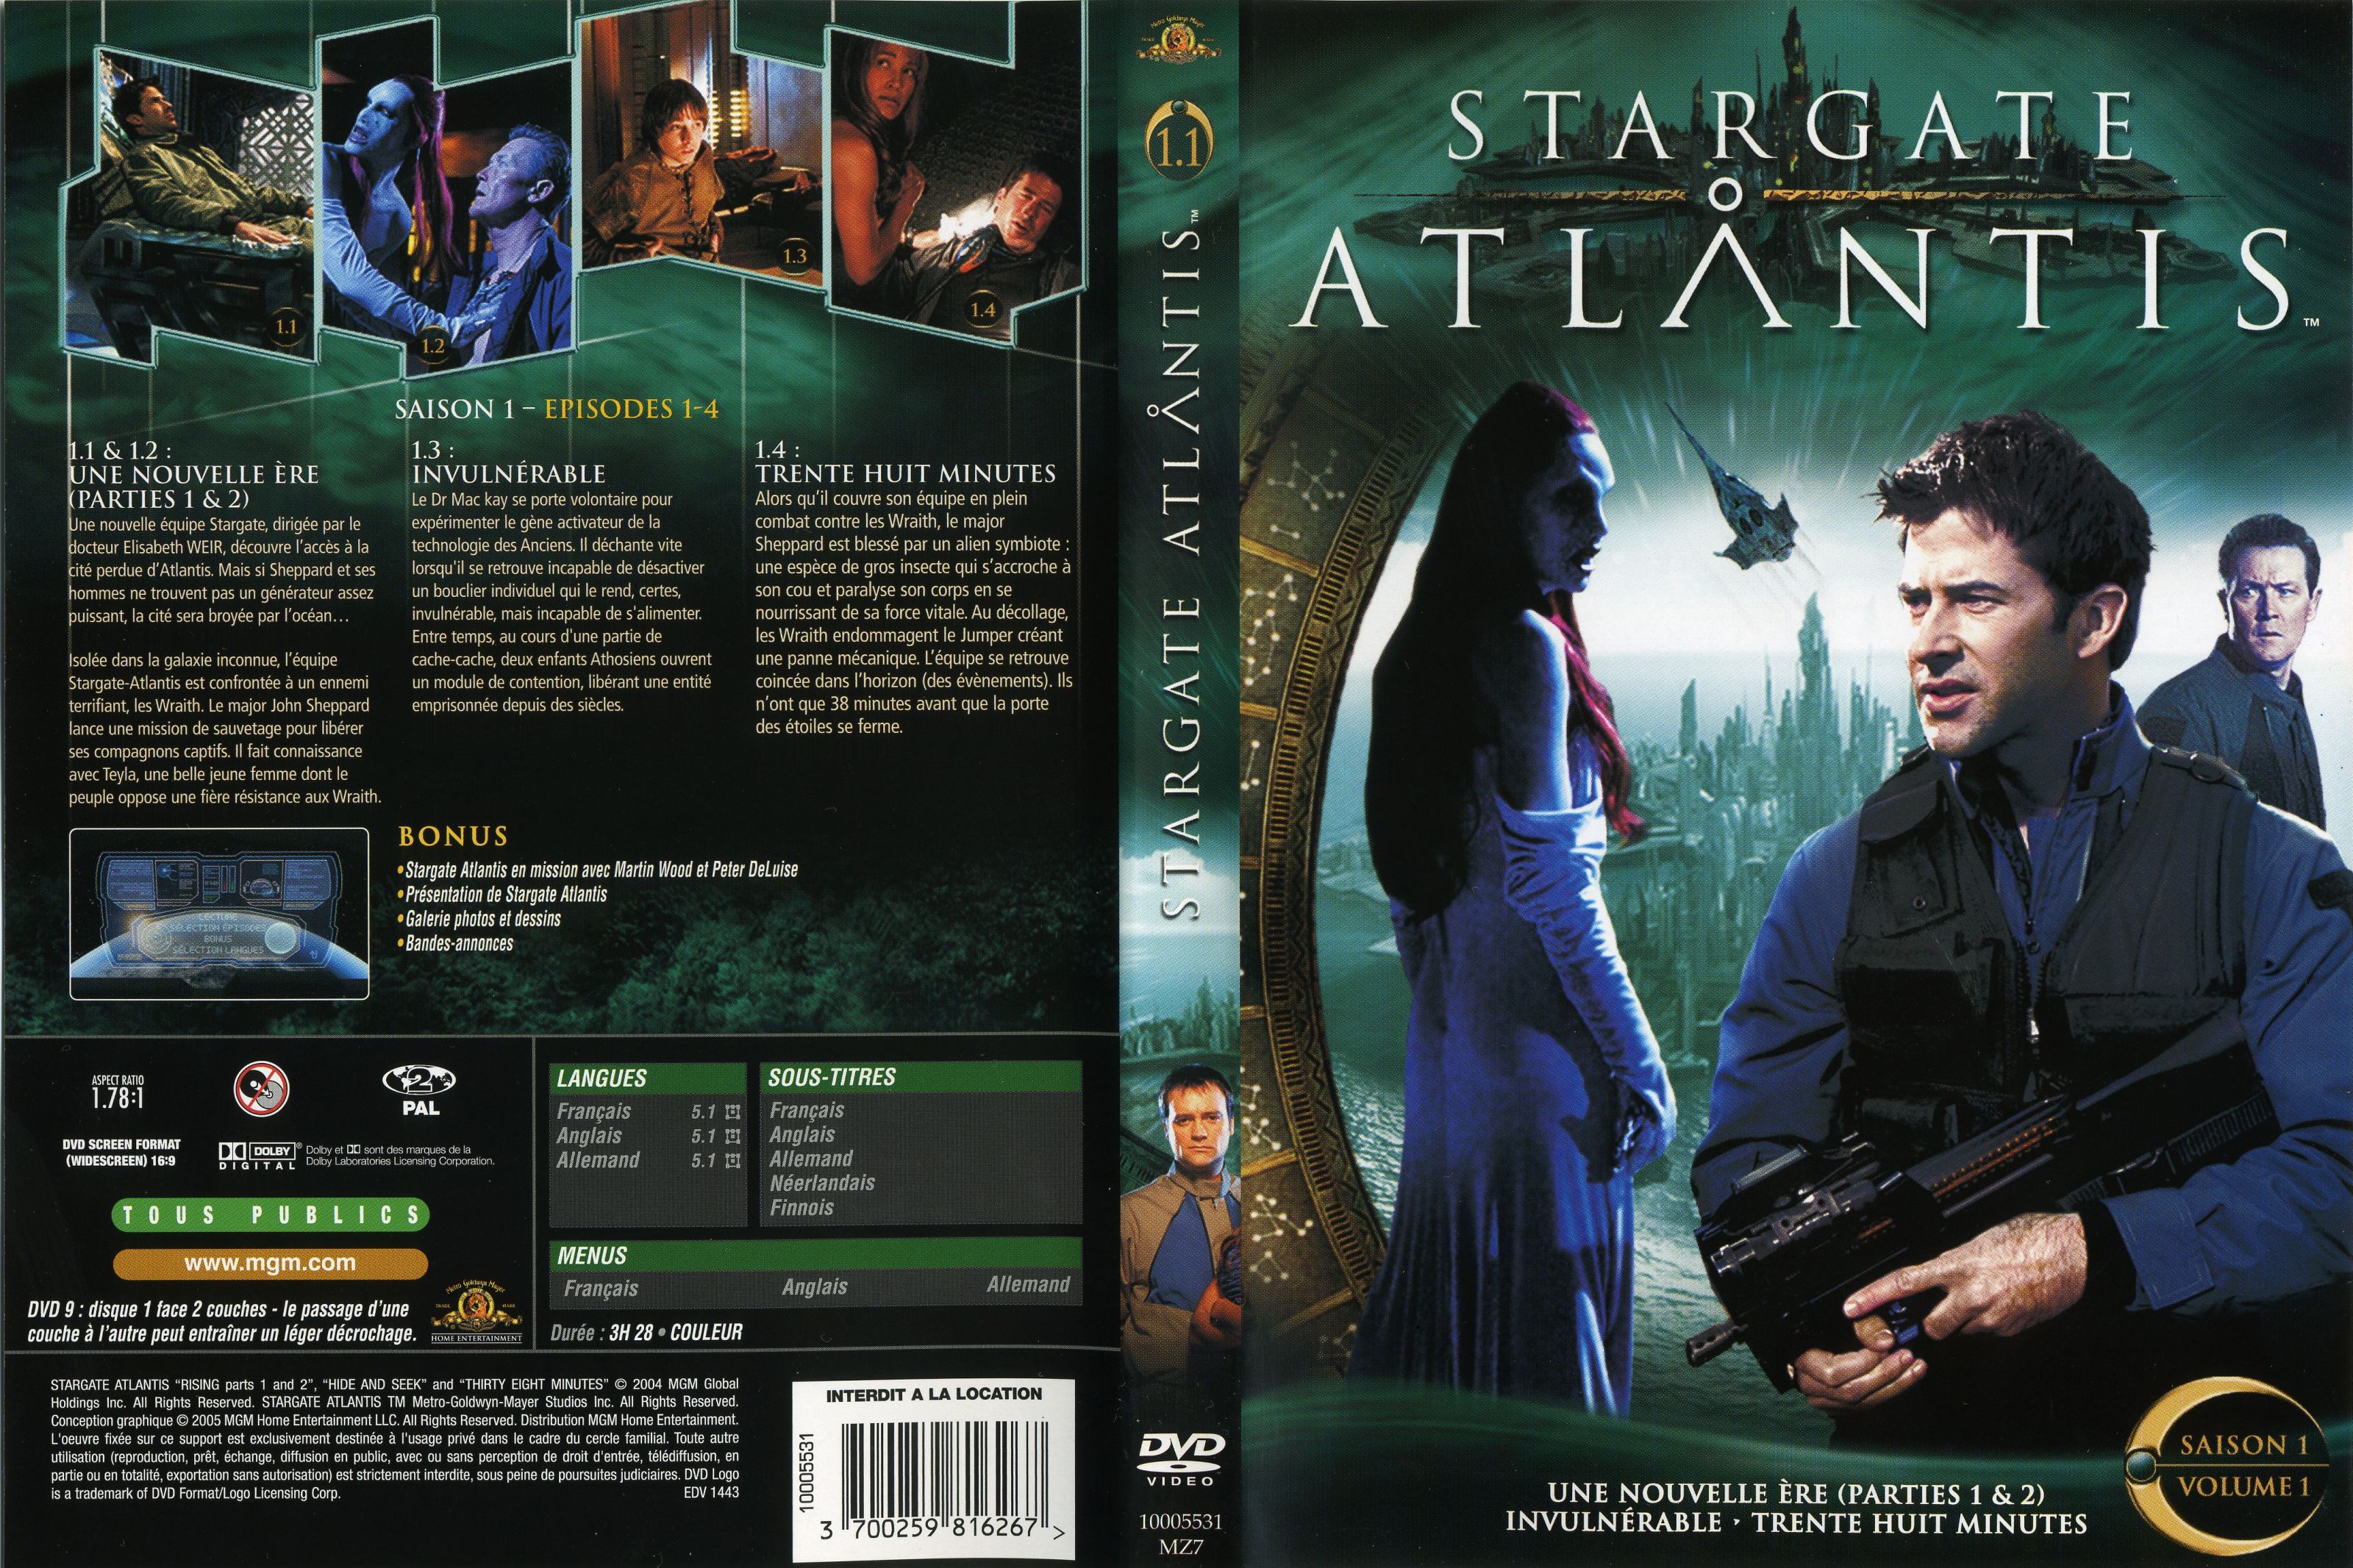 Jaquette DVD Stargate Atlantis saison 1 vol 1